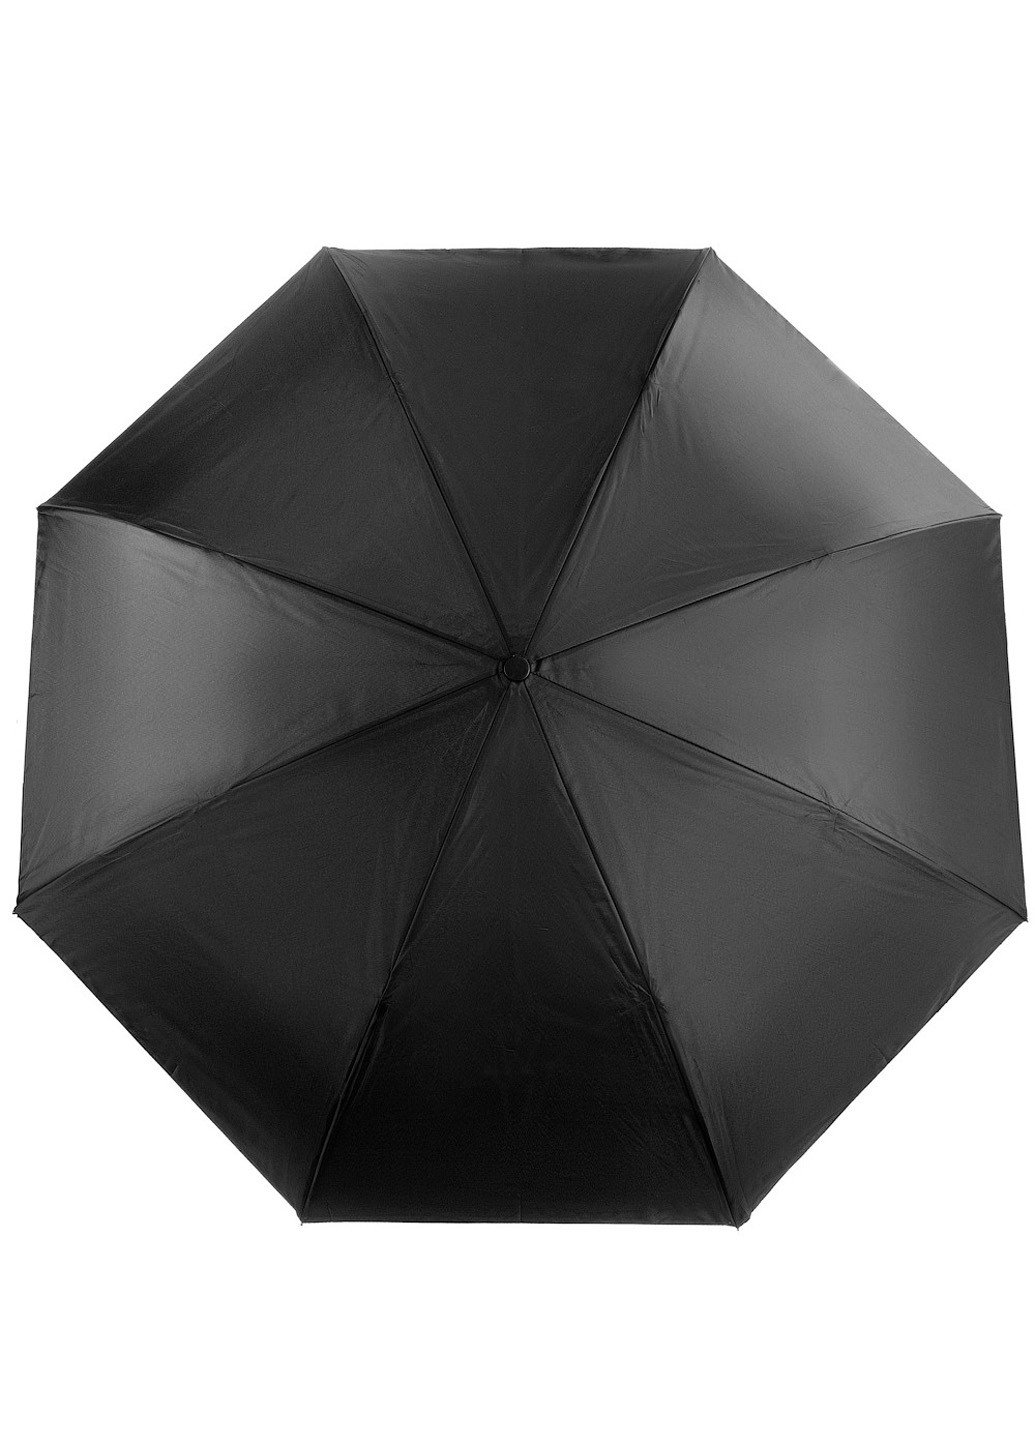 Женский зонт-трость механический 108 см Art rain (194321266)